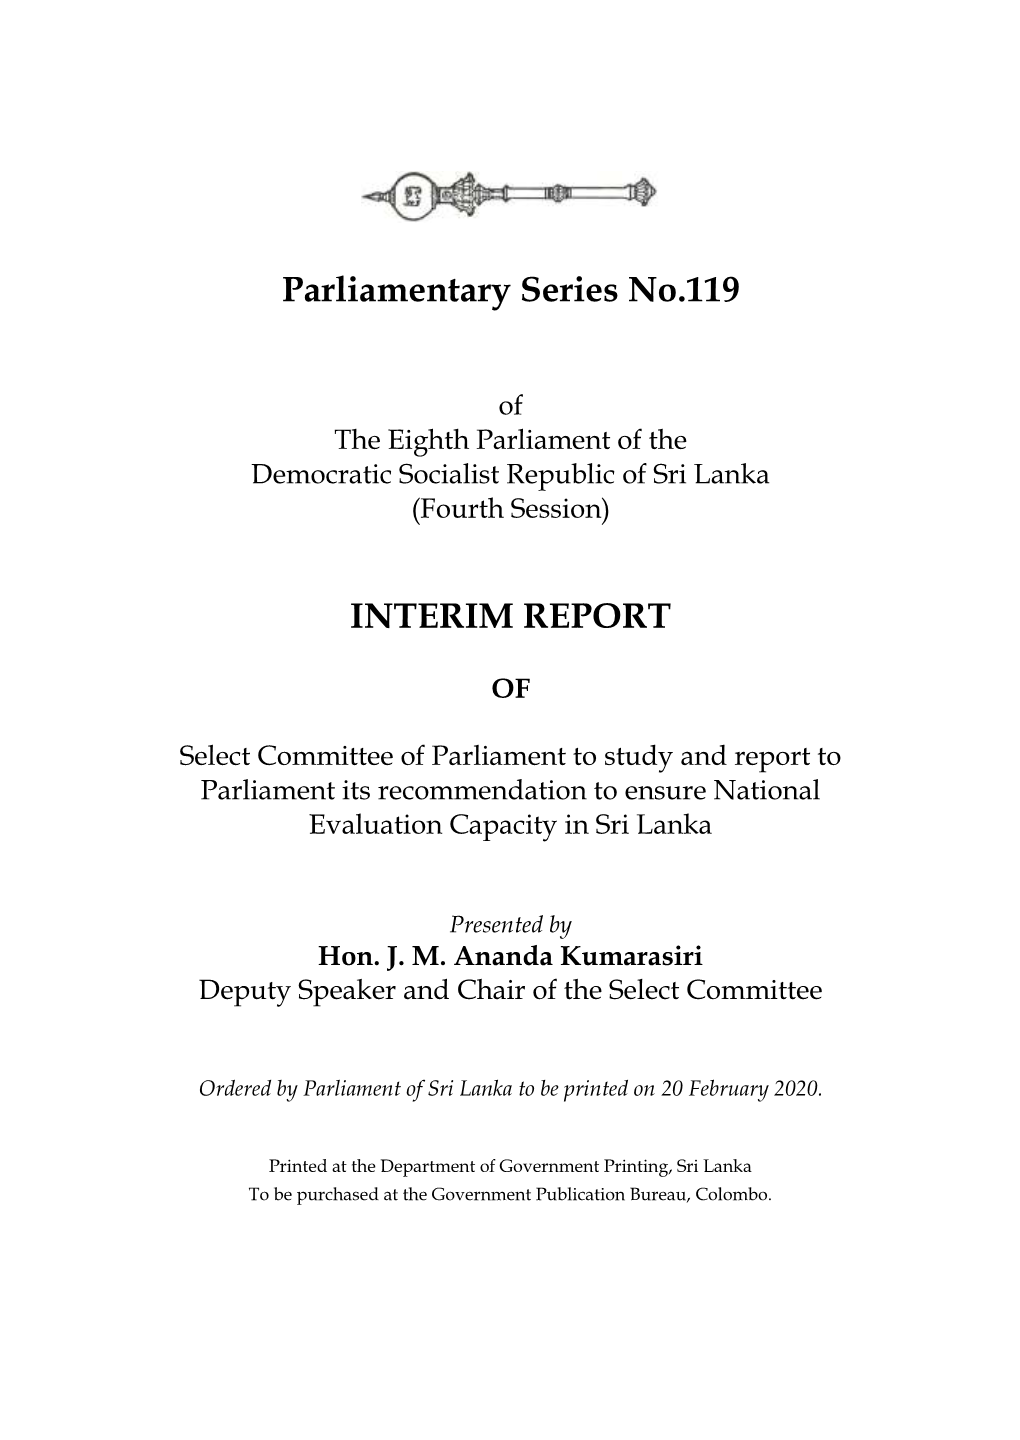 Interim Report of Select Committee Of